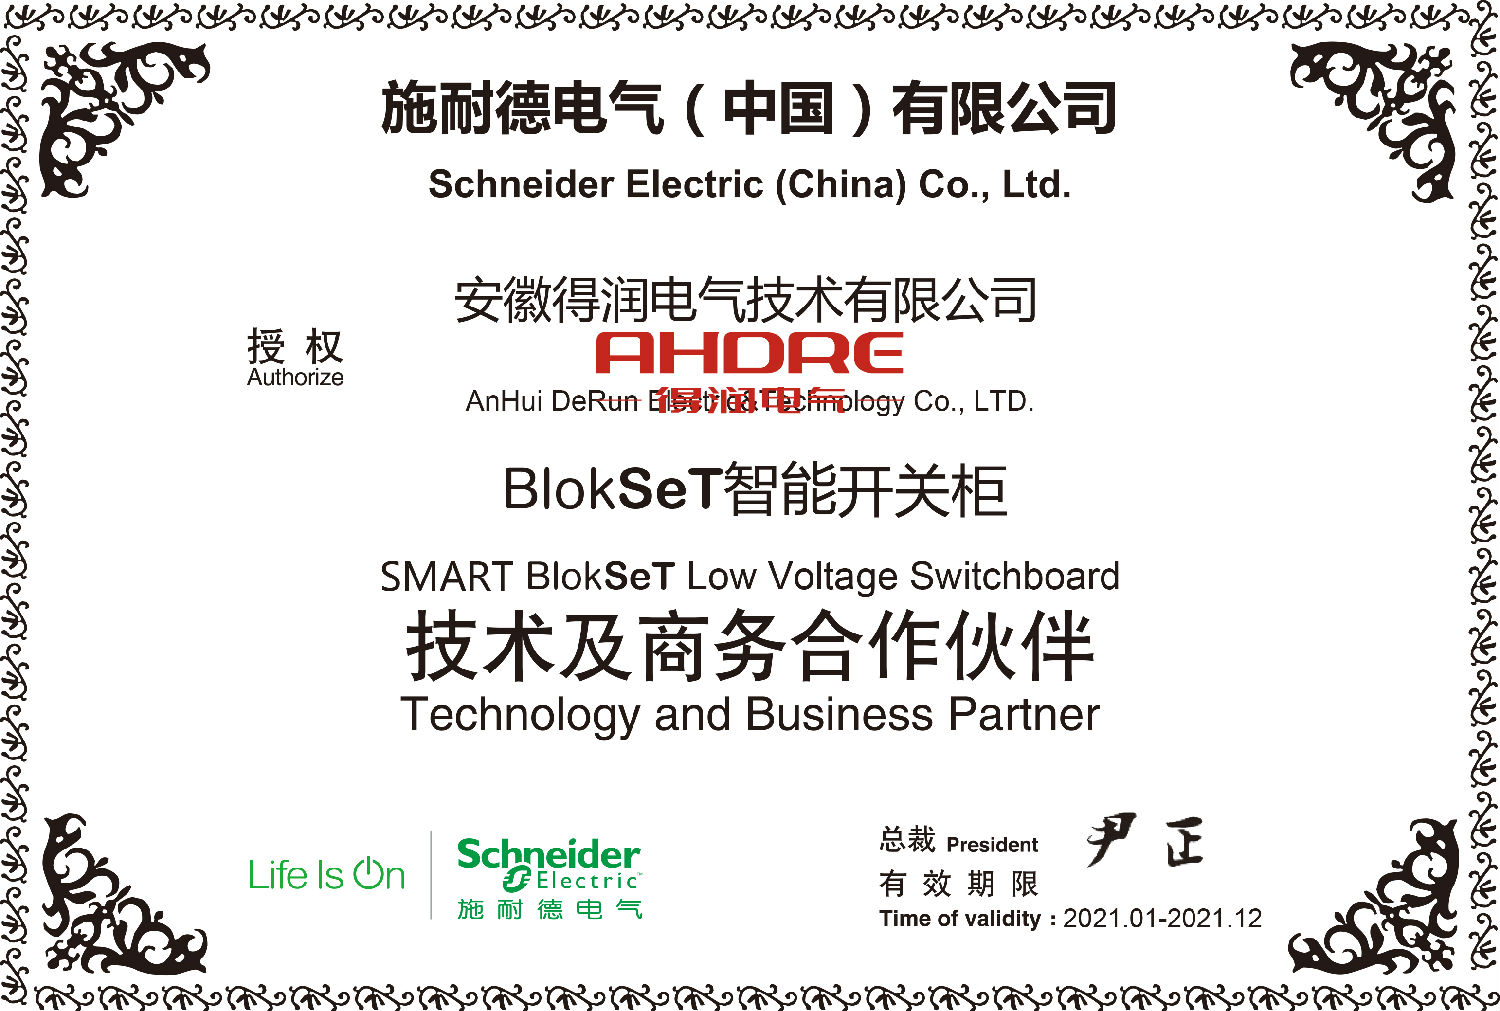 Schneider Authorized Cabinet blokset Authorization Certificate Derun Electric